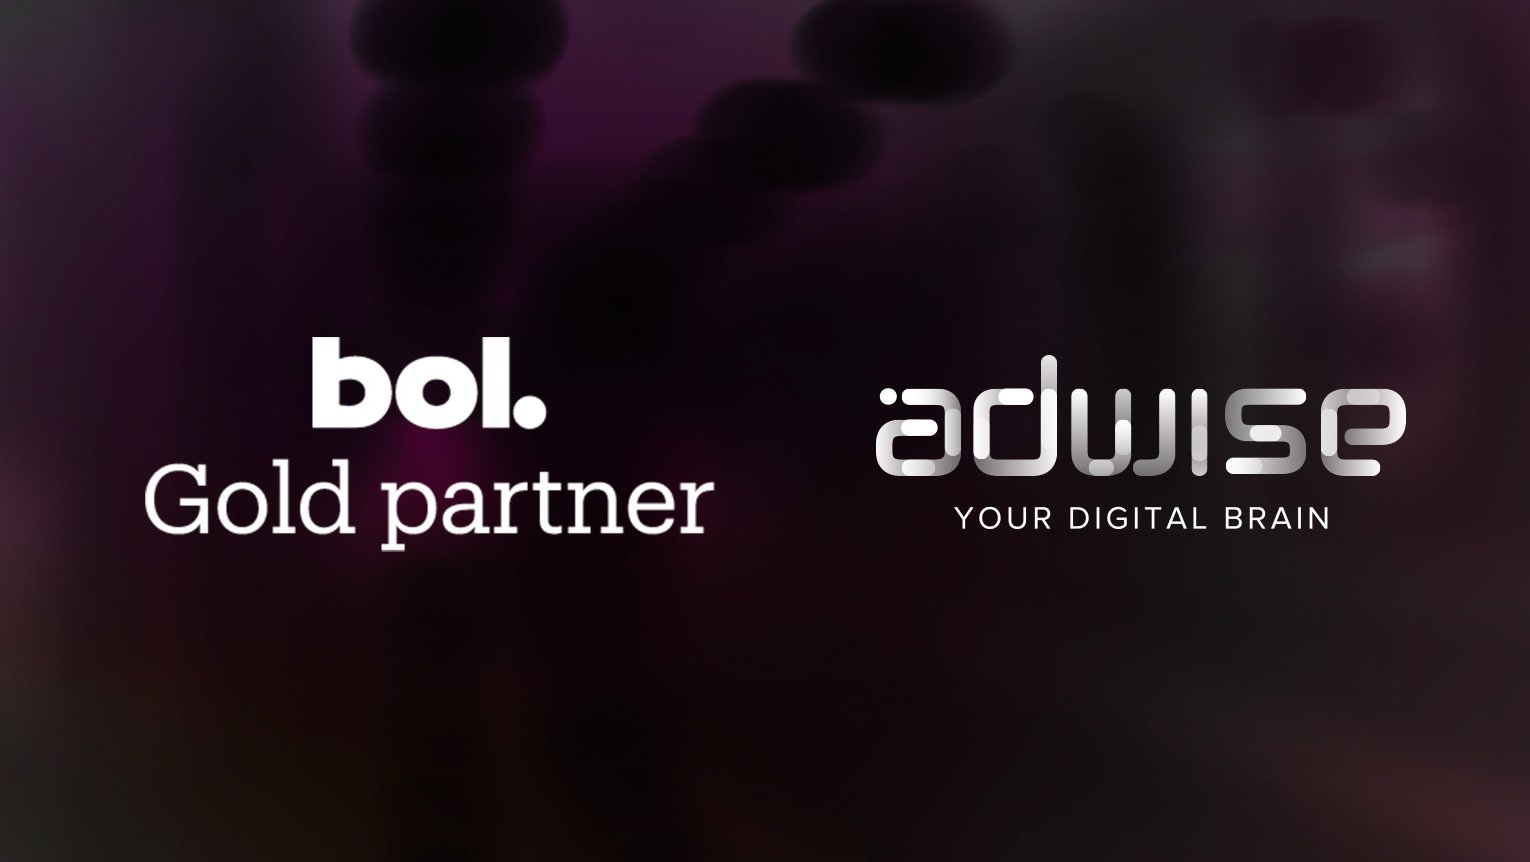 Adwise is uitgeroepen tot Gold Partner van bol.com